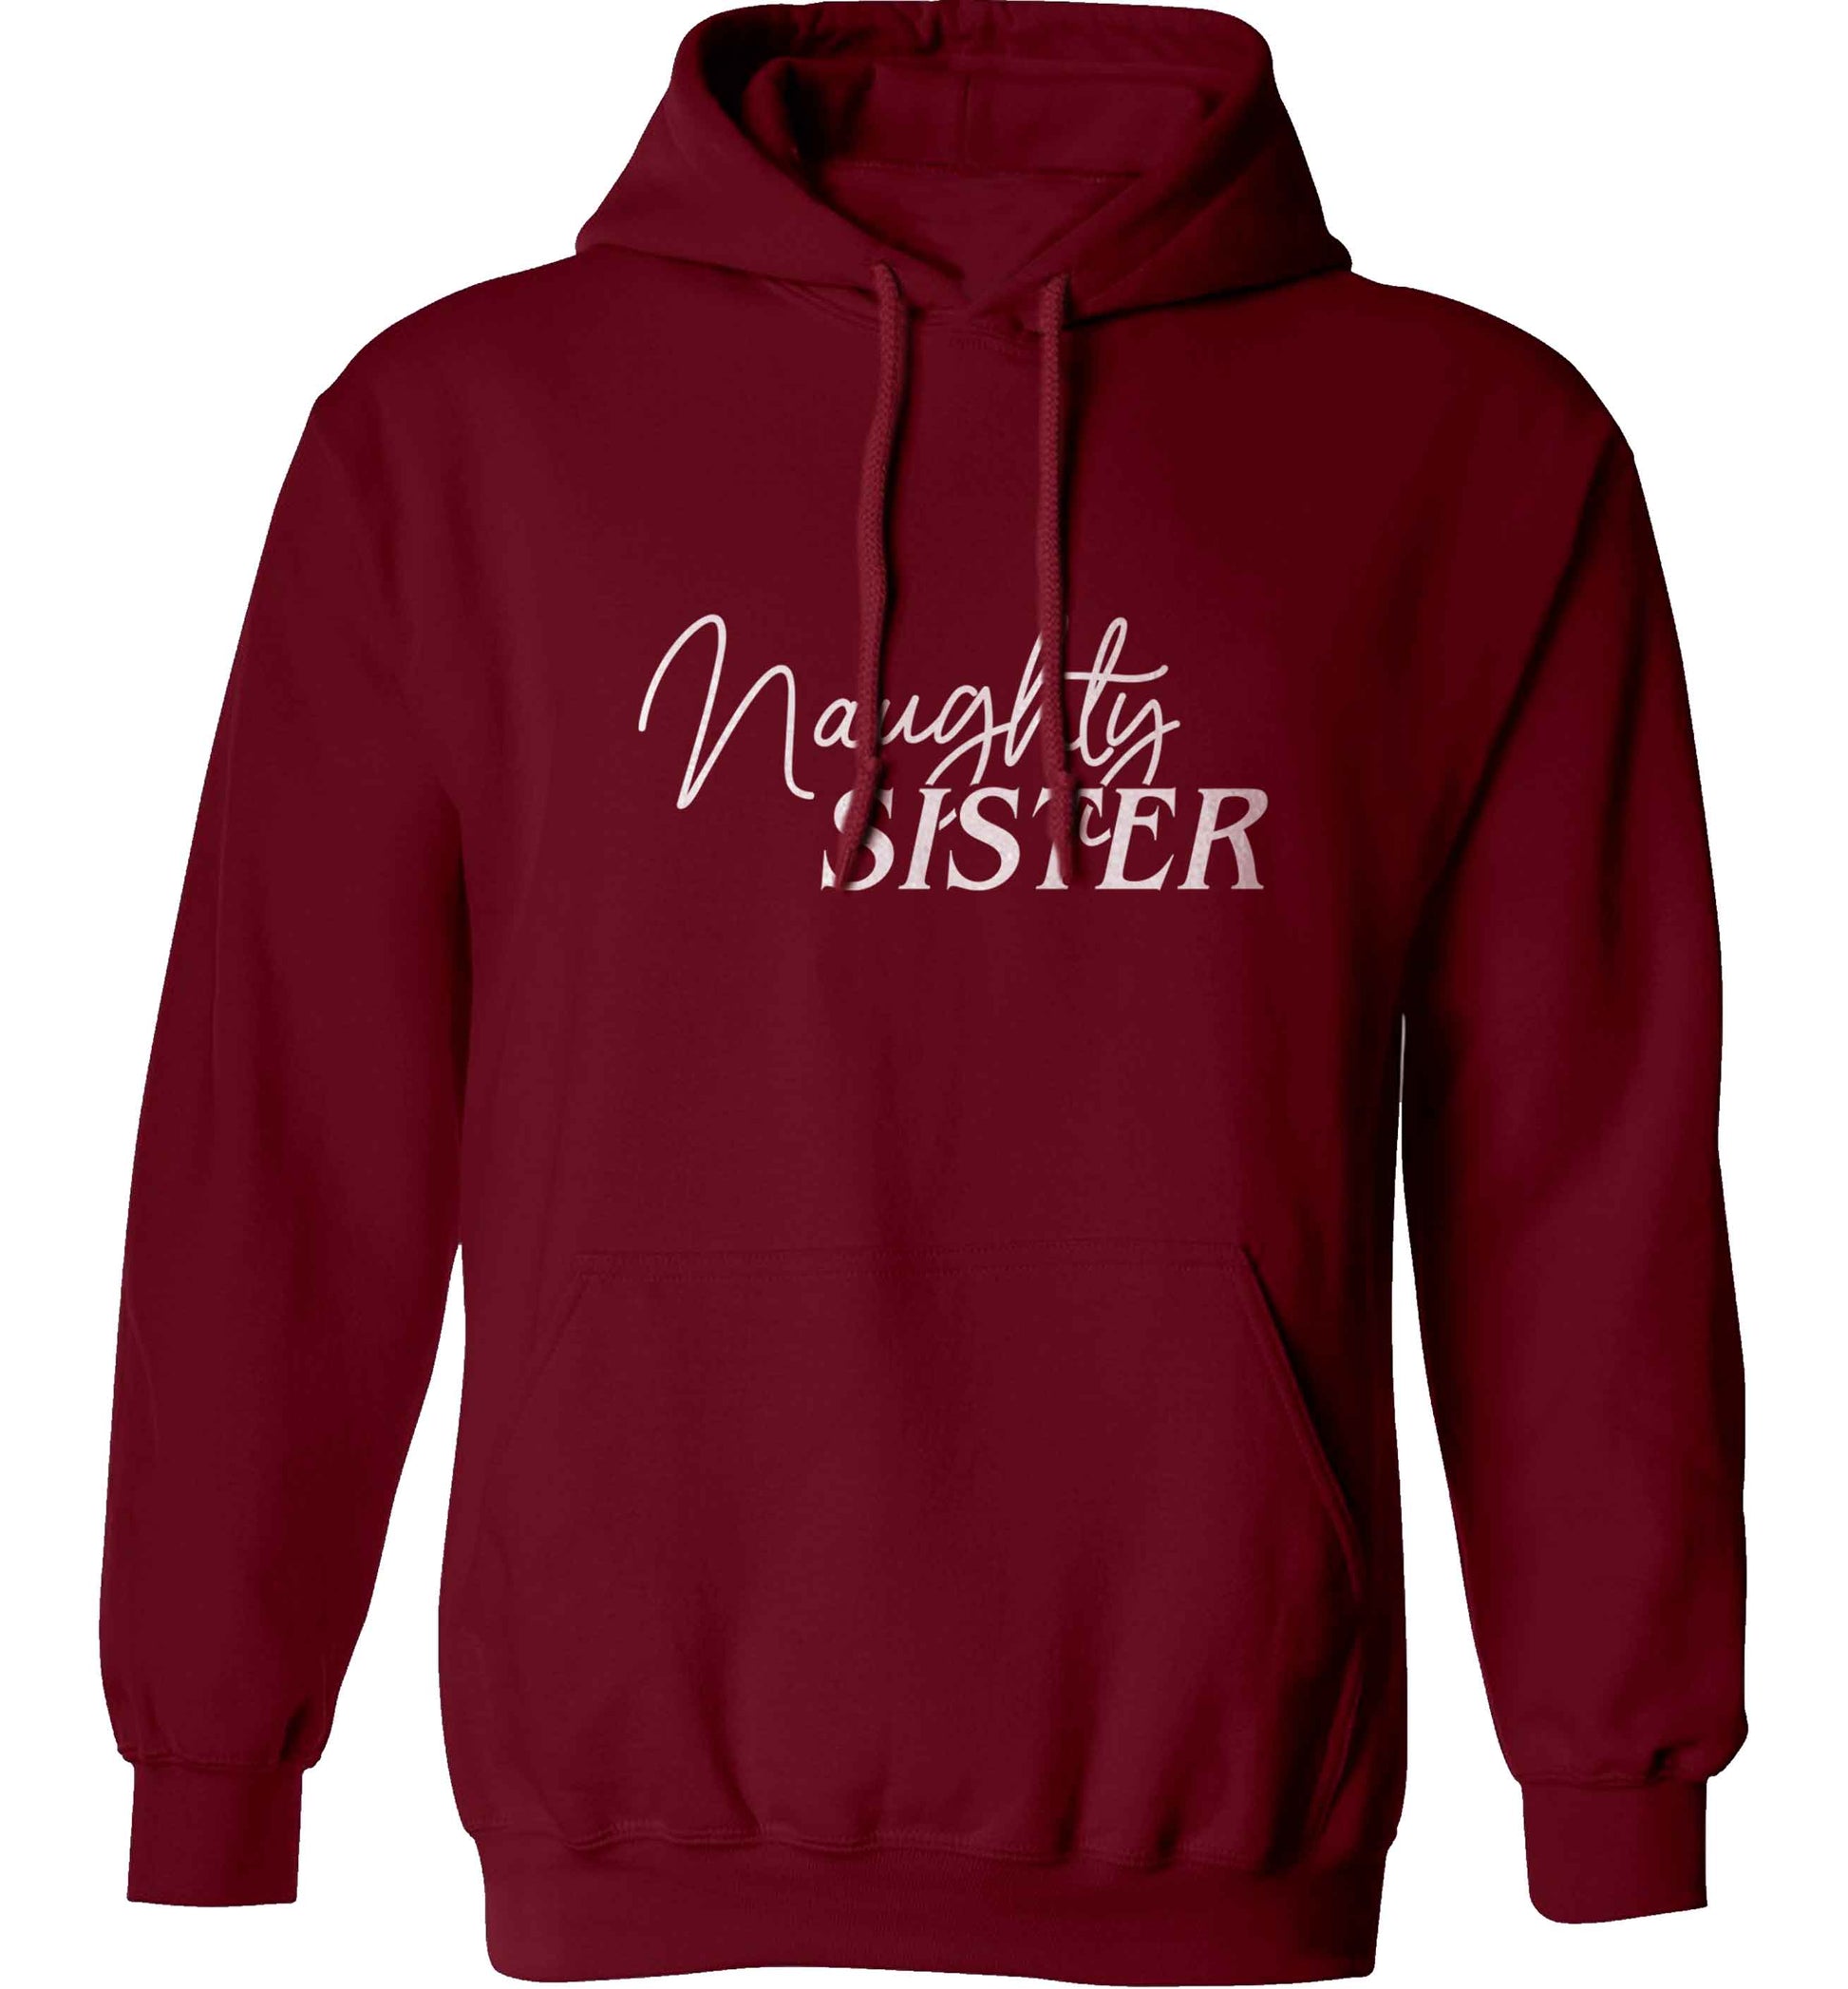 Naughty Sister adults unisex maroon hoodie 2XL